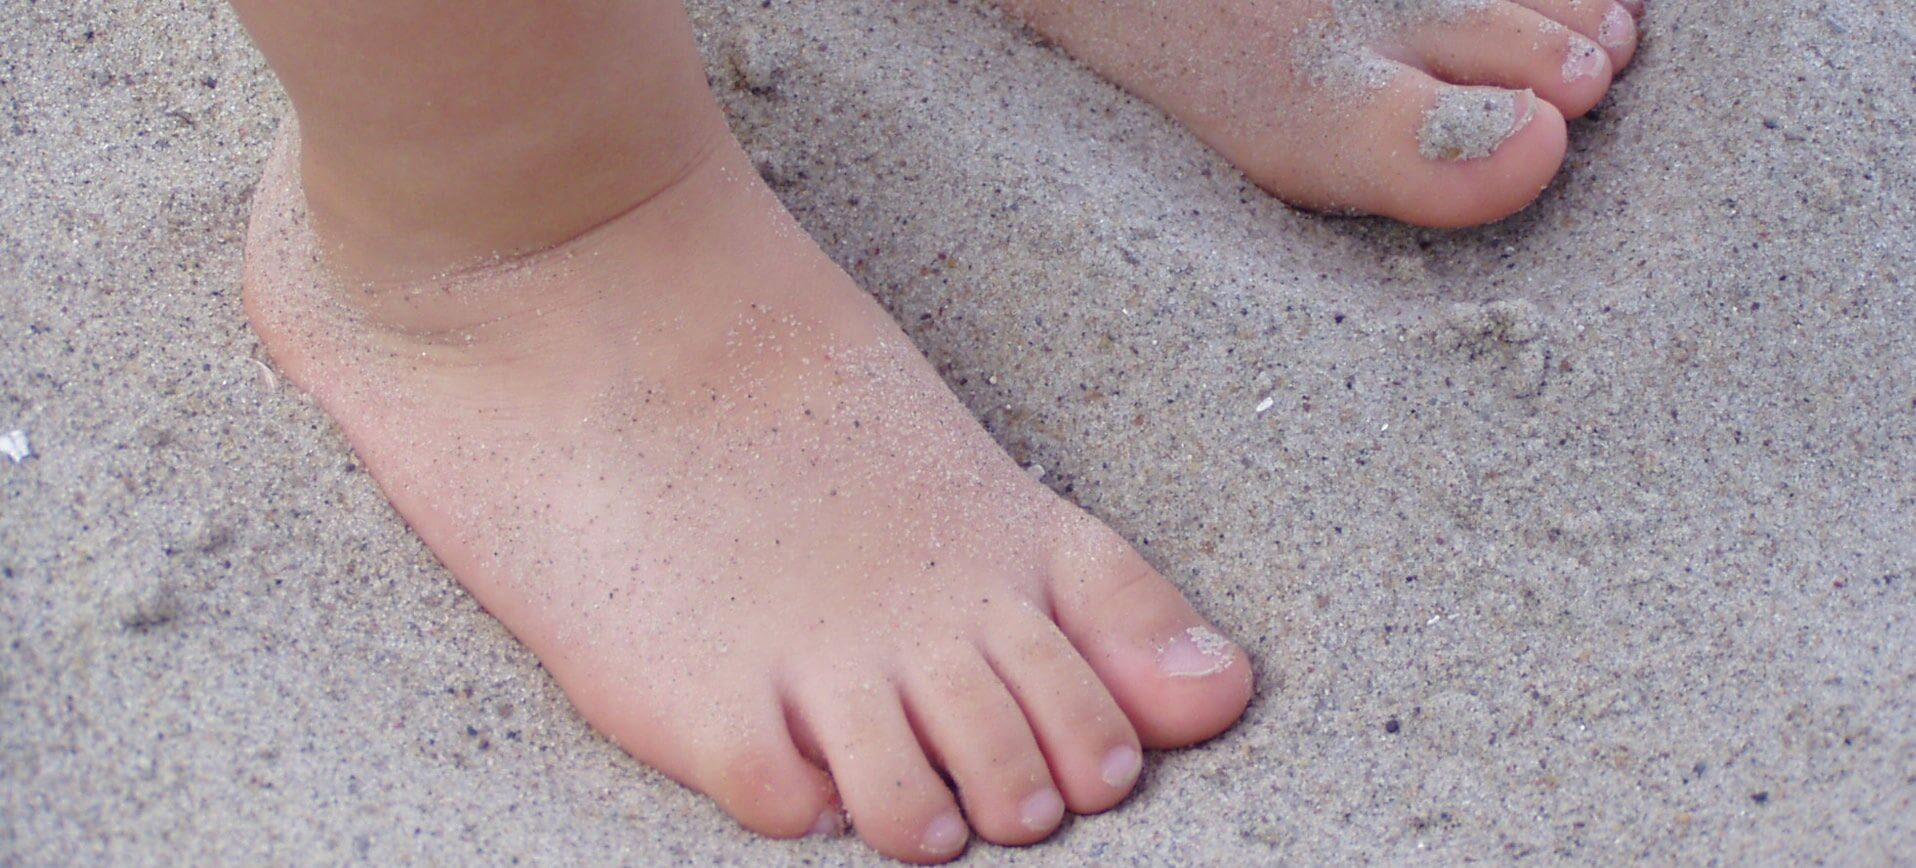 کف پای صاف شدید در کودکی نشان از بروز یک مشکل دارد